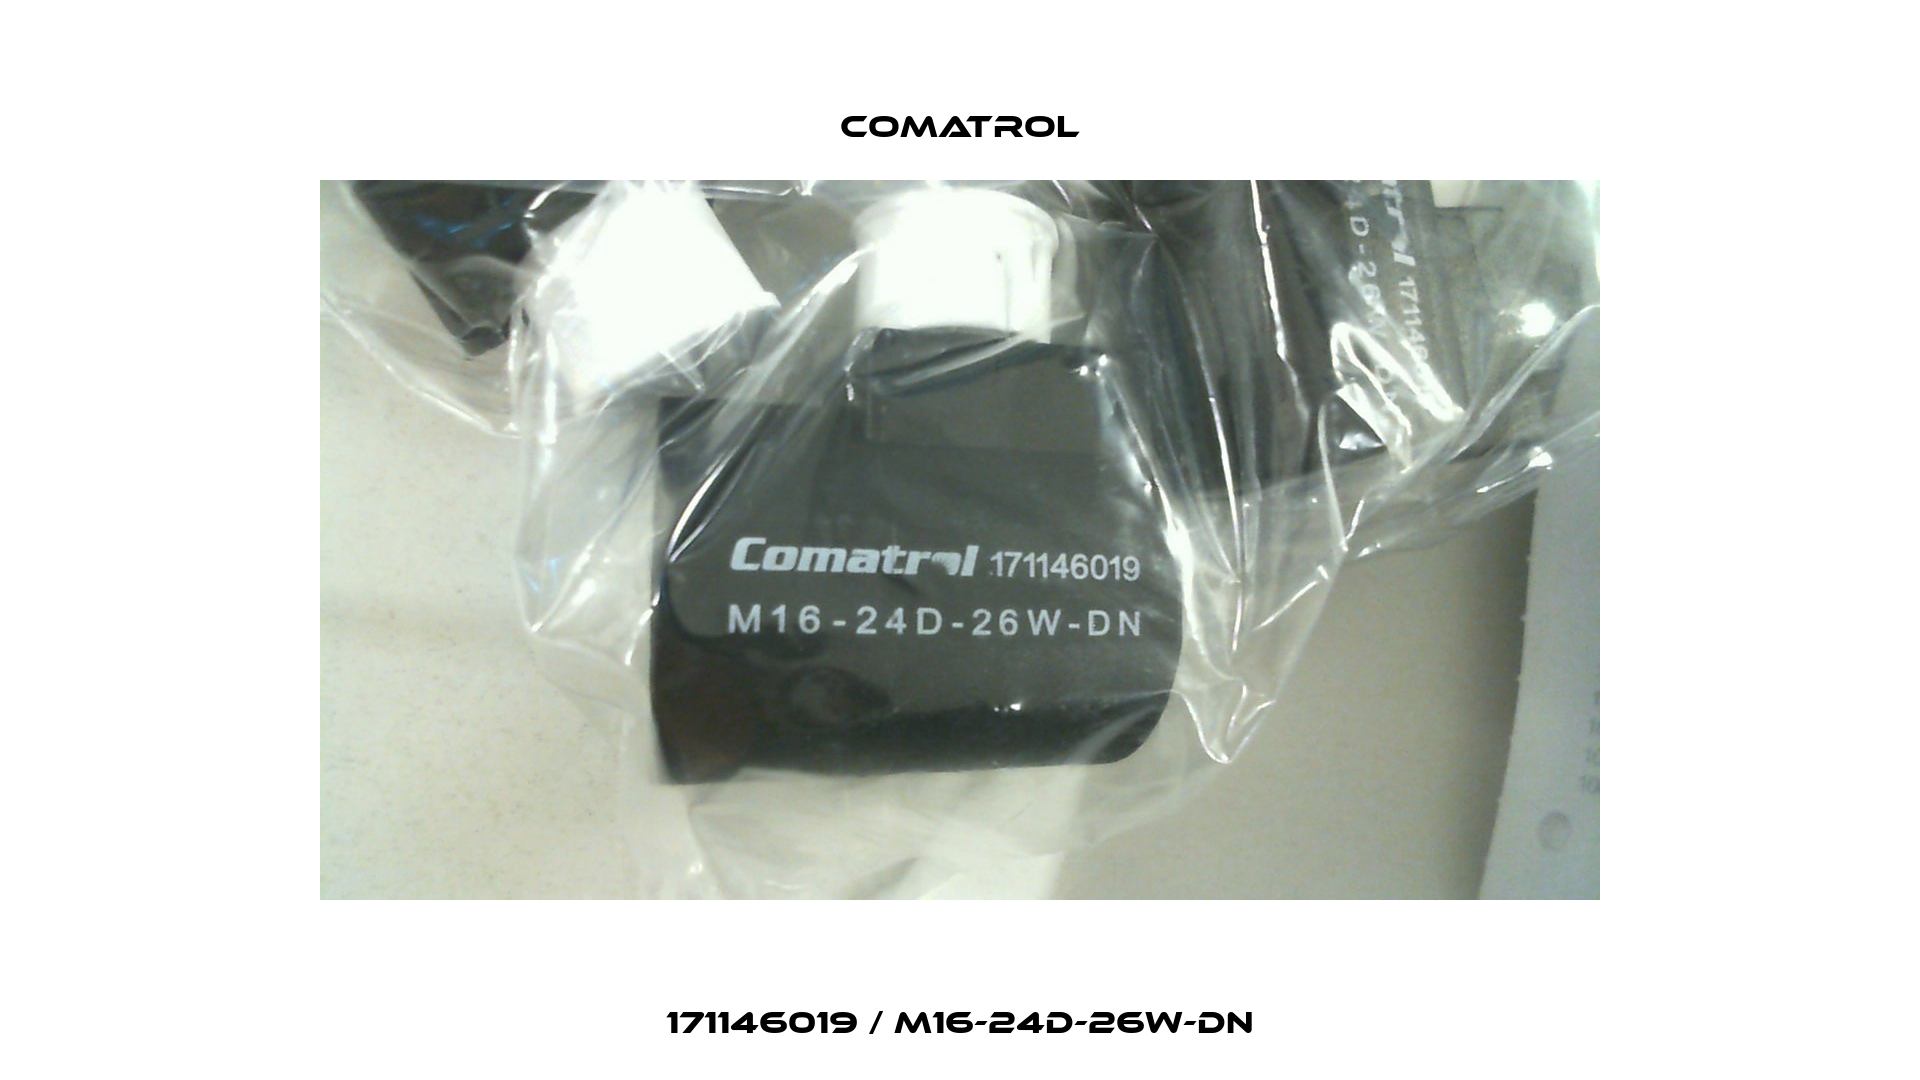 171146019 / M16-24D-26W-DN Comatrol